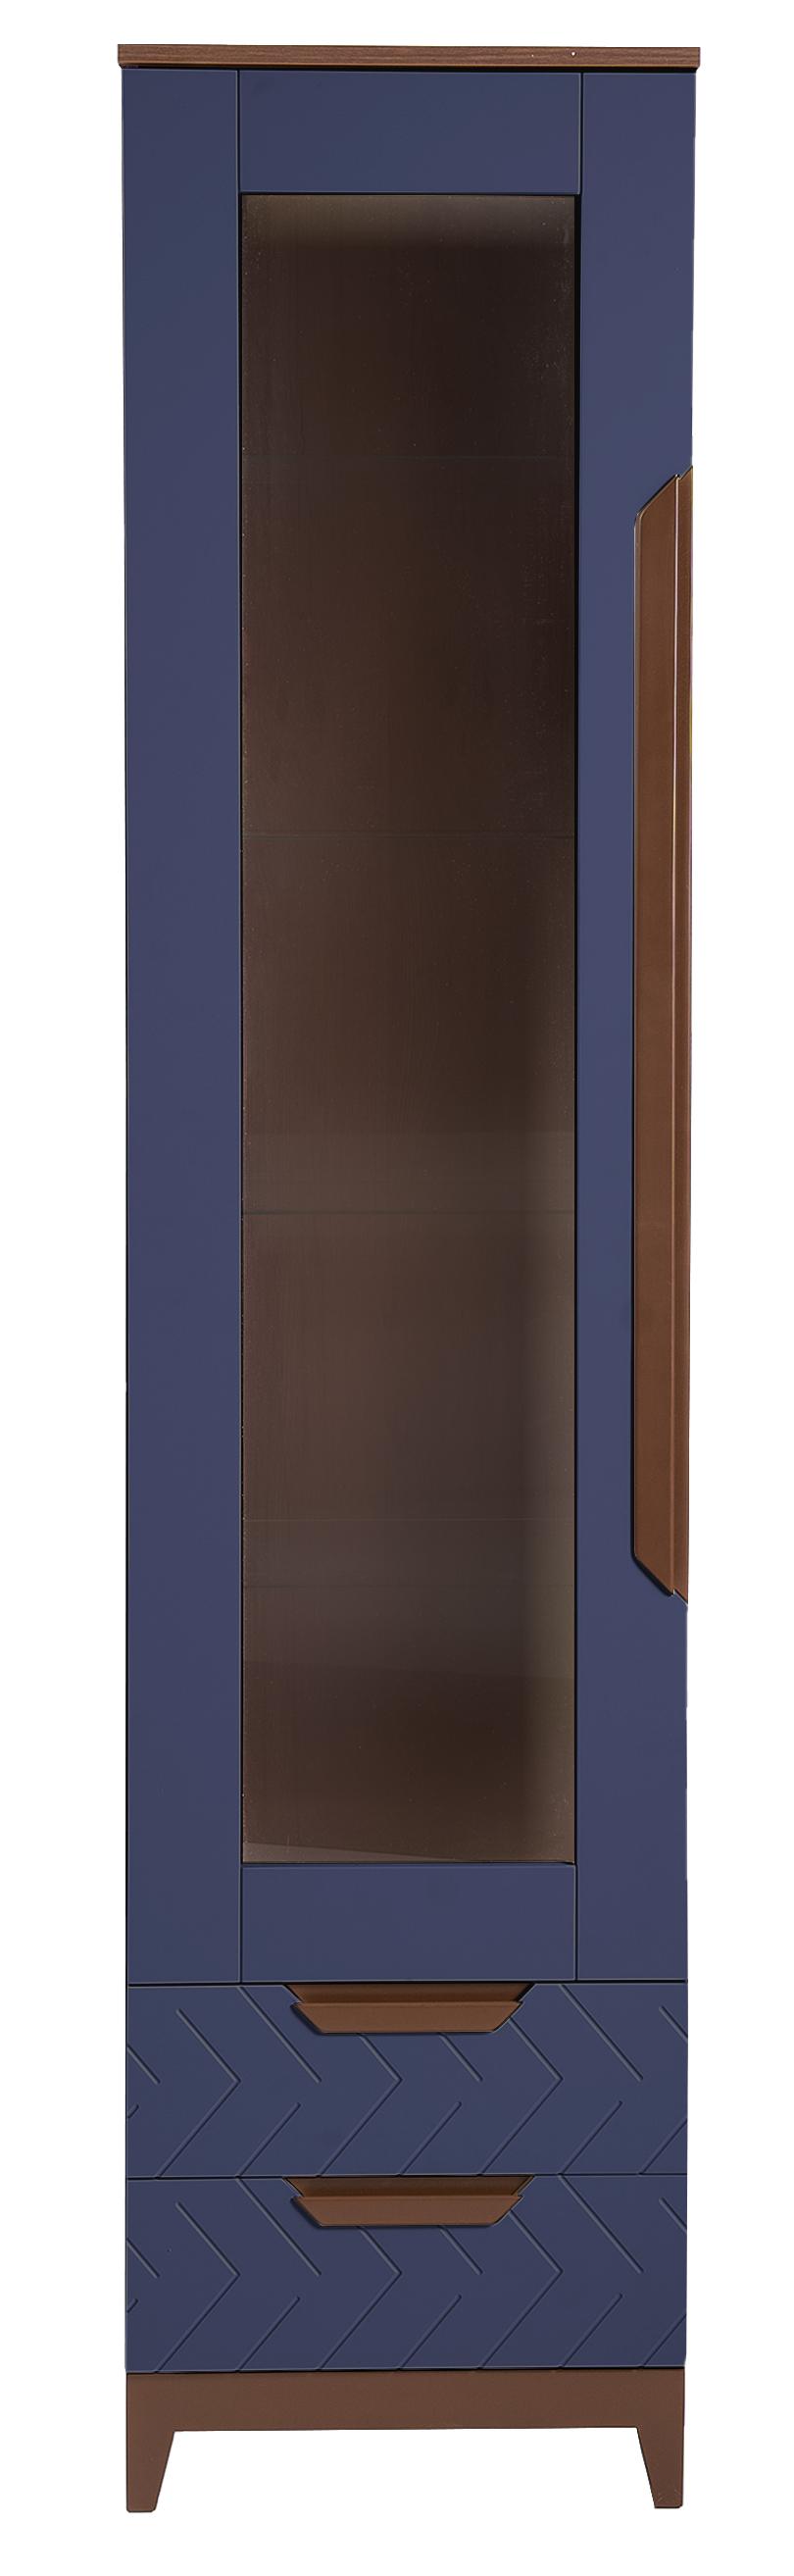 Шкаф витрина R-Home Сканди, размер 50x45x210 см, цвет: Сапфир(4009260H_Сапфир)4009260H_Сапфир